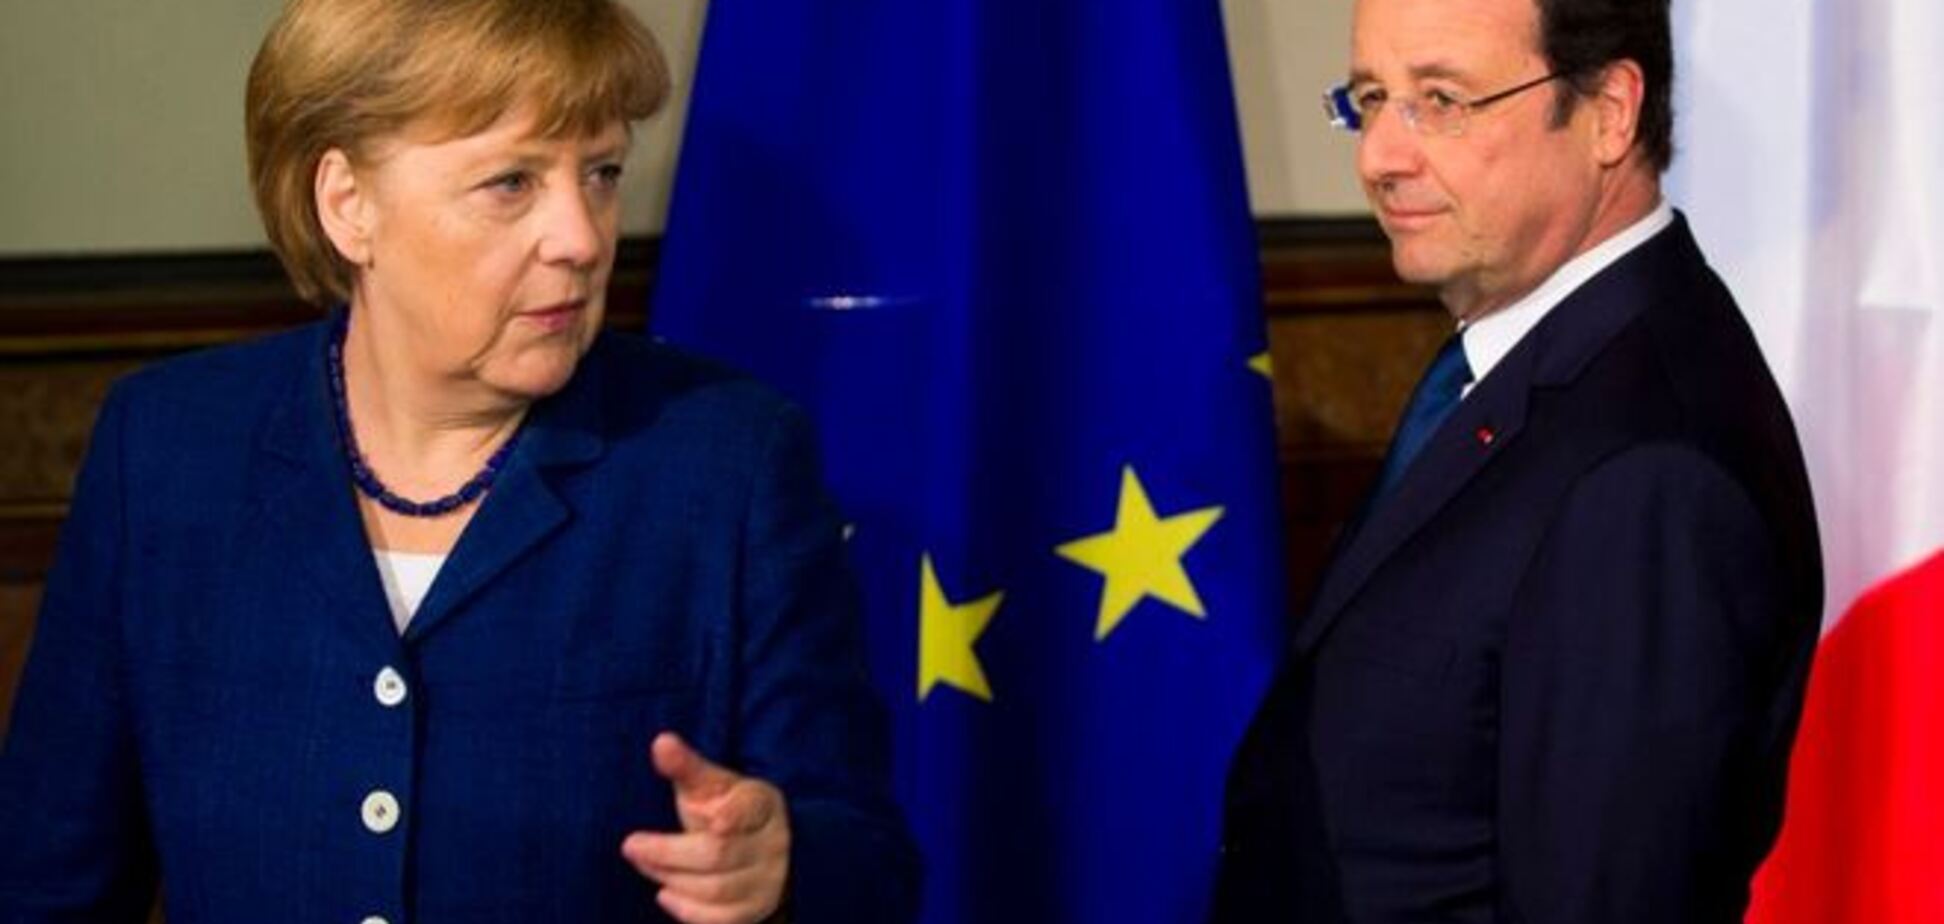 Меркель и Олланд вздохнули с облегчением после подписания Украиной и РФ газового соглашения 